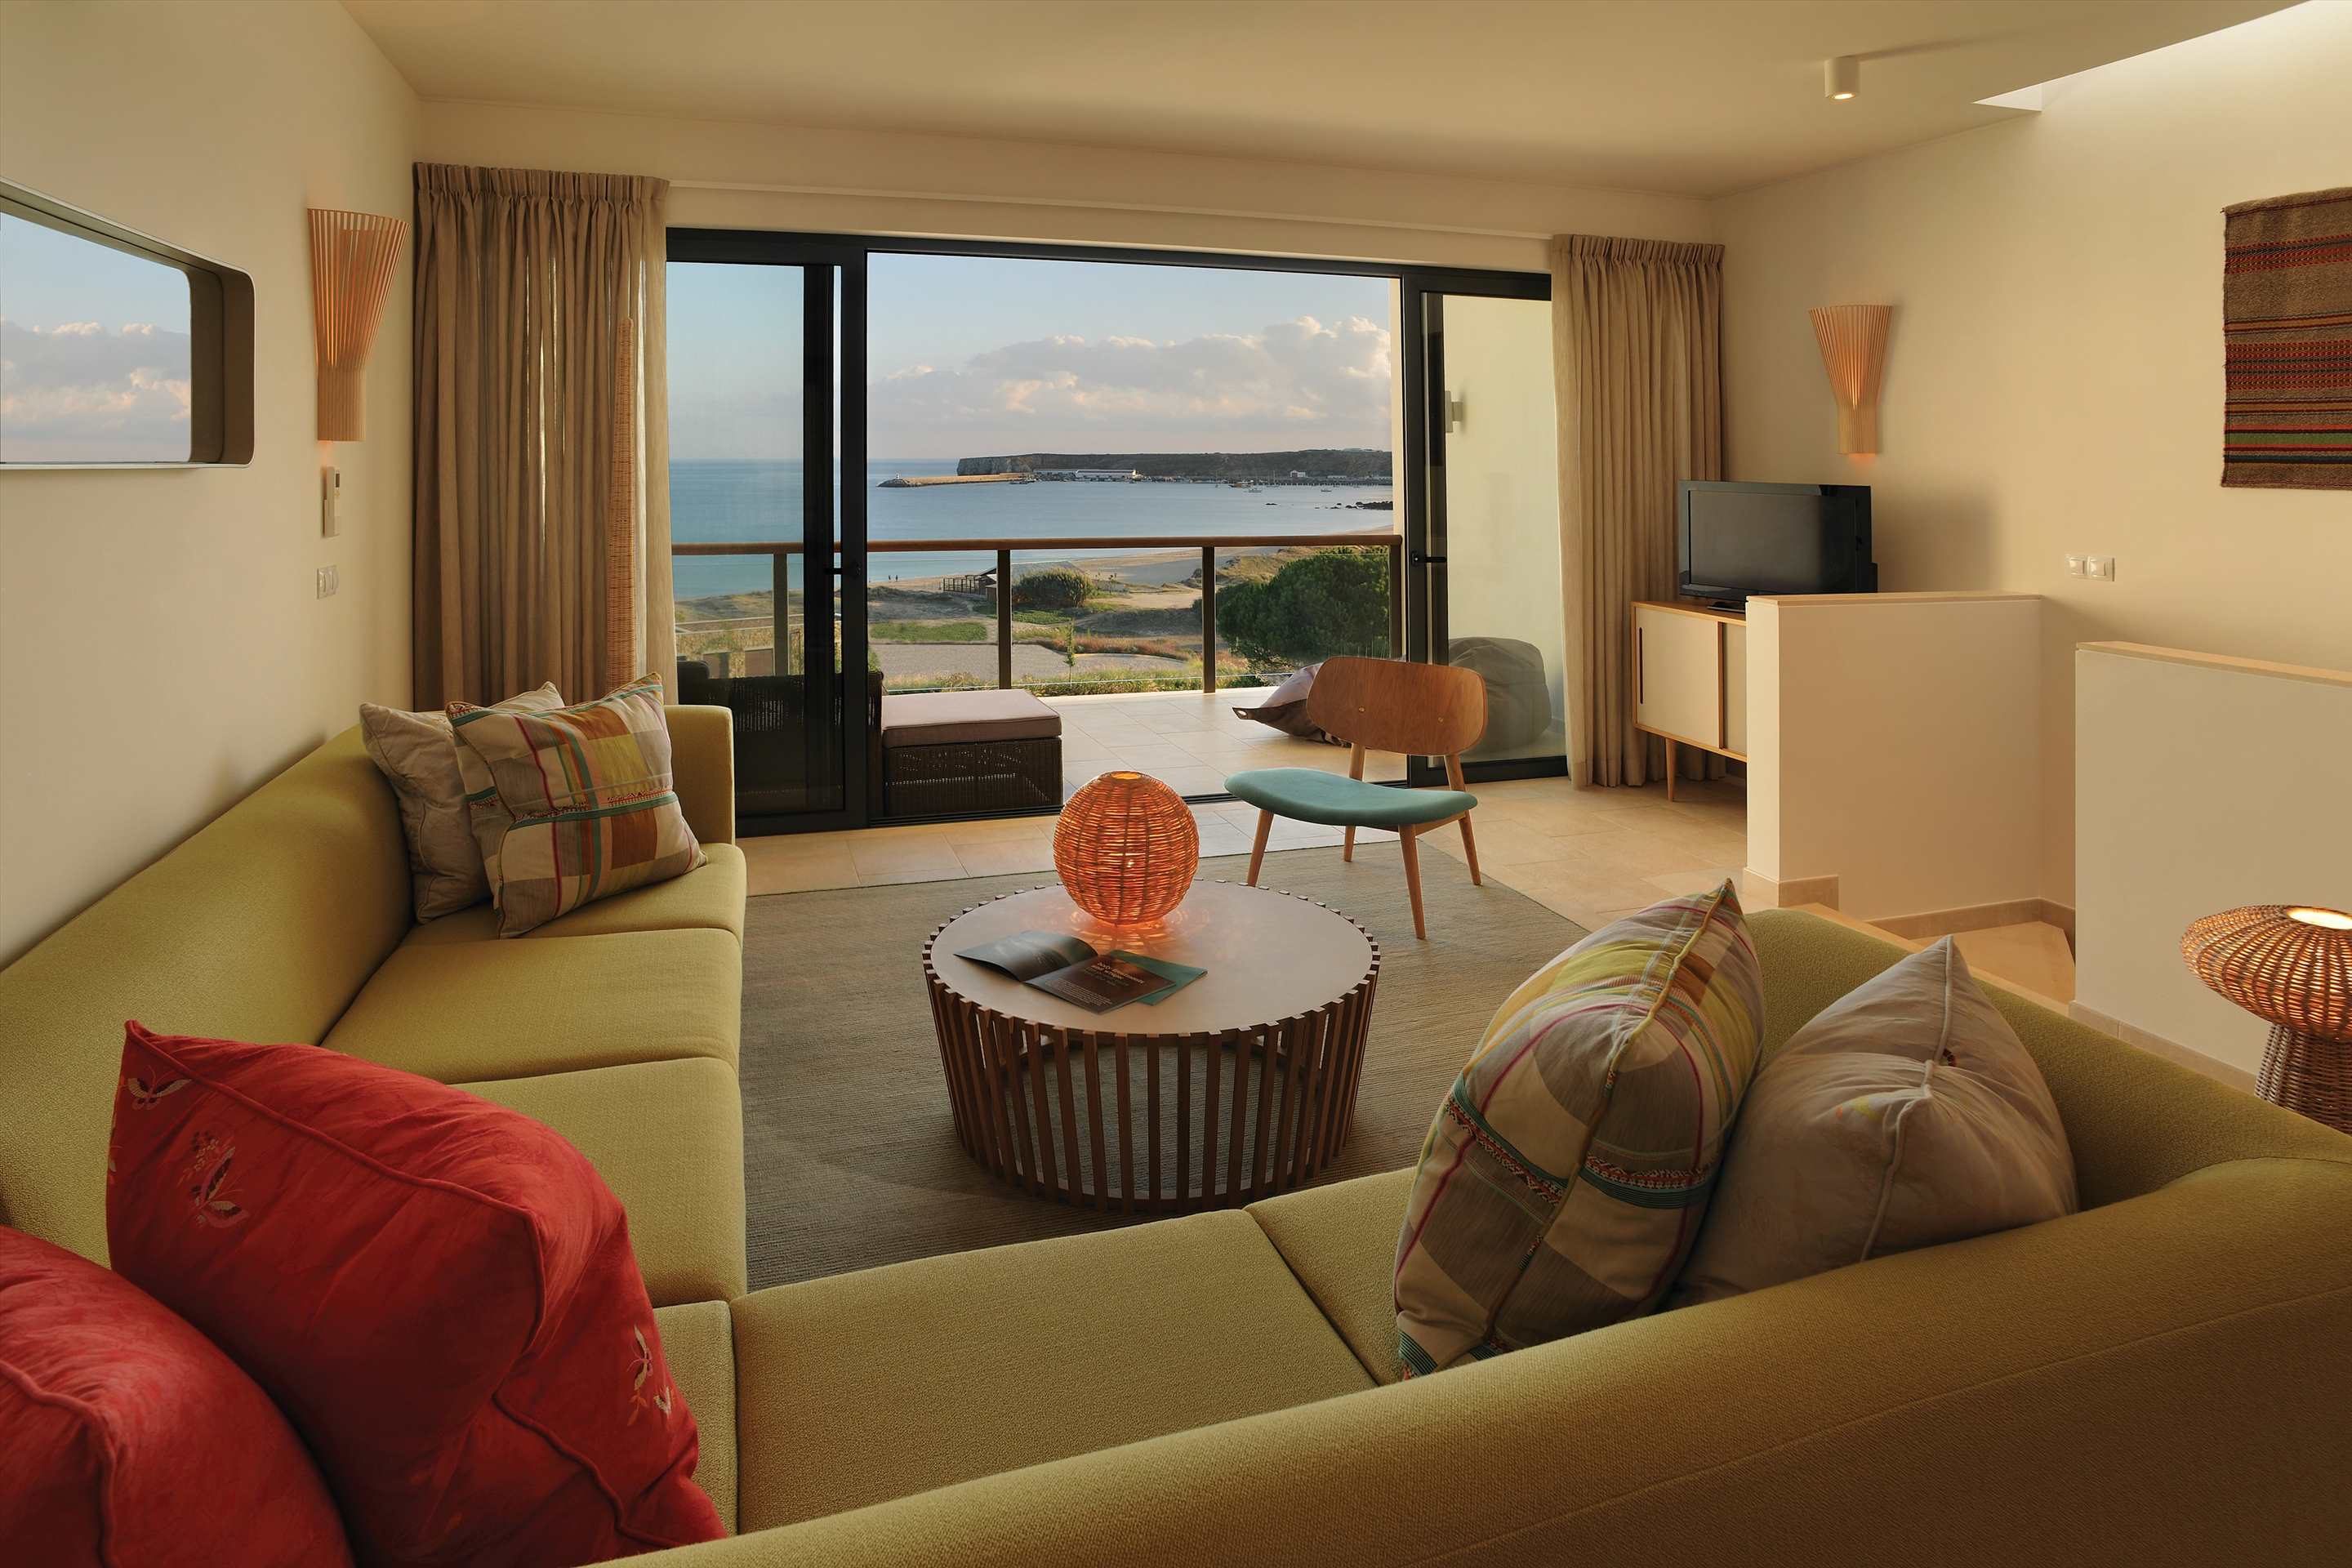 Martinhal Village Ocean House, partial ocean view, Master Deluxe Three Bedrooms, 3 bedroom villa in Martinhal Sagres, Algarve